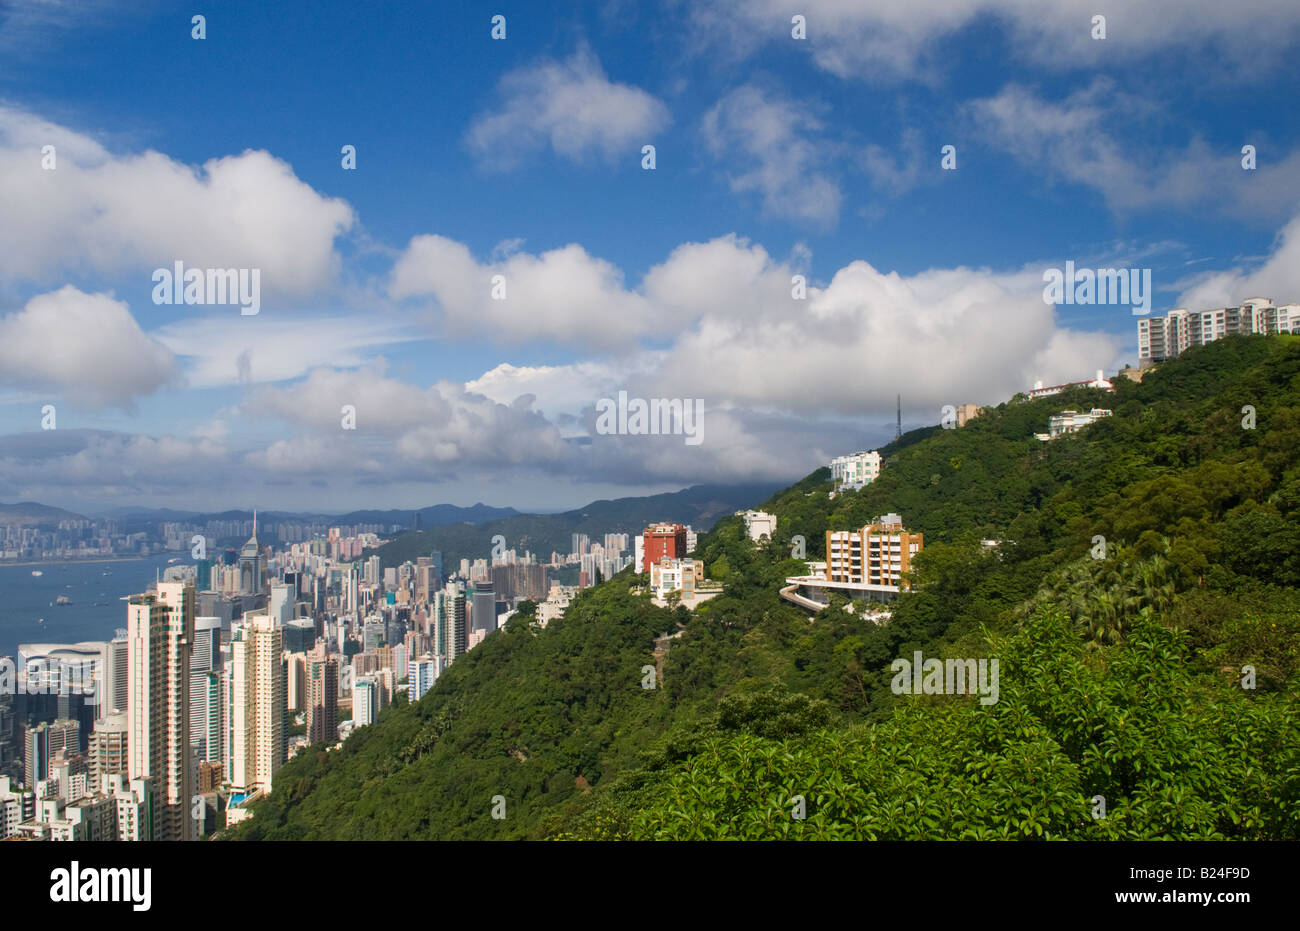 Appartement résidentiel de luxe les immeubles et les maisons sur le pic de Hong Kong. Banque D'Images